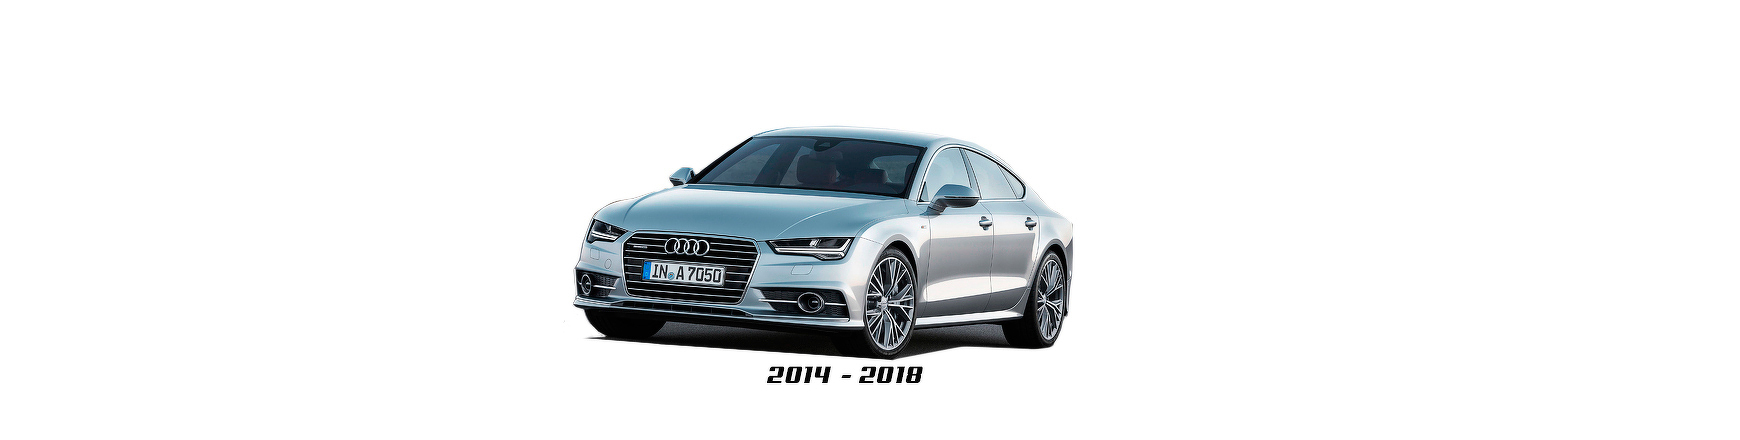 Repuestos y Recambios de Audi A7 (4G) de 2014 a 2018 | Veramauto.es